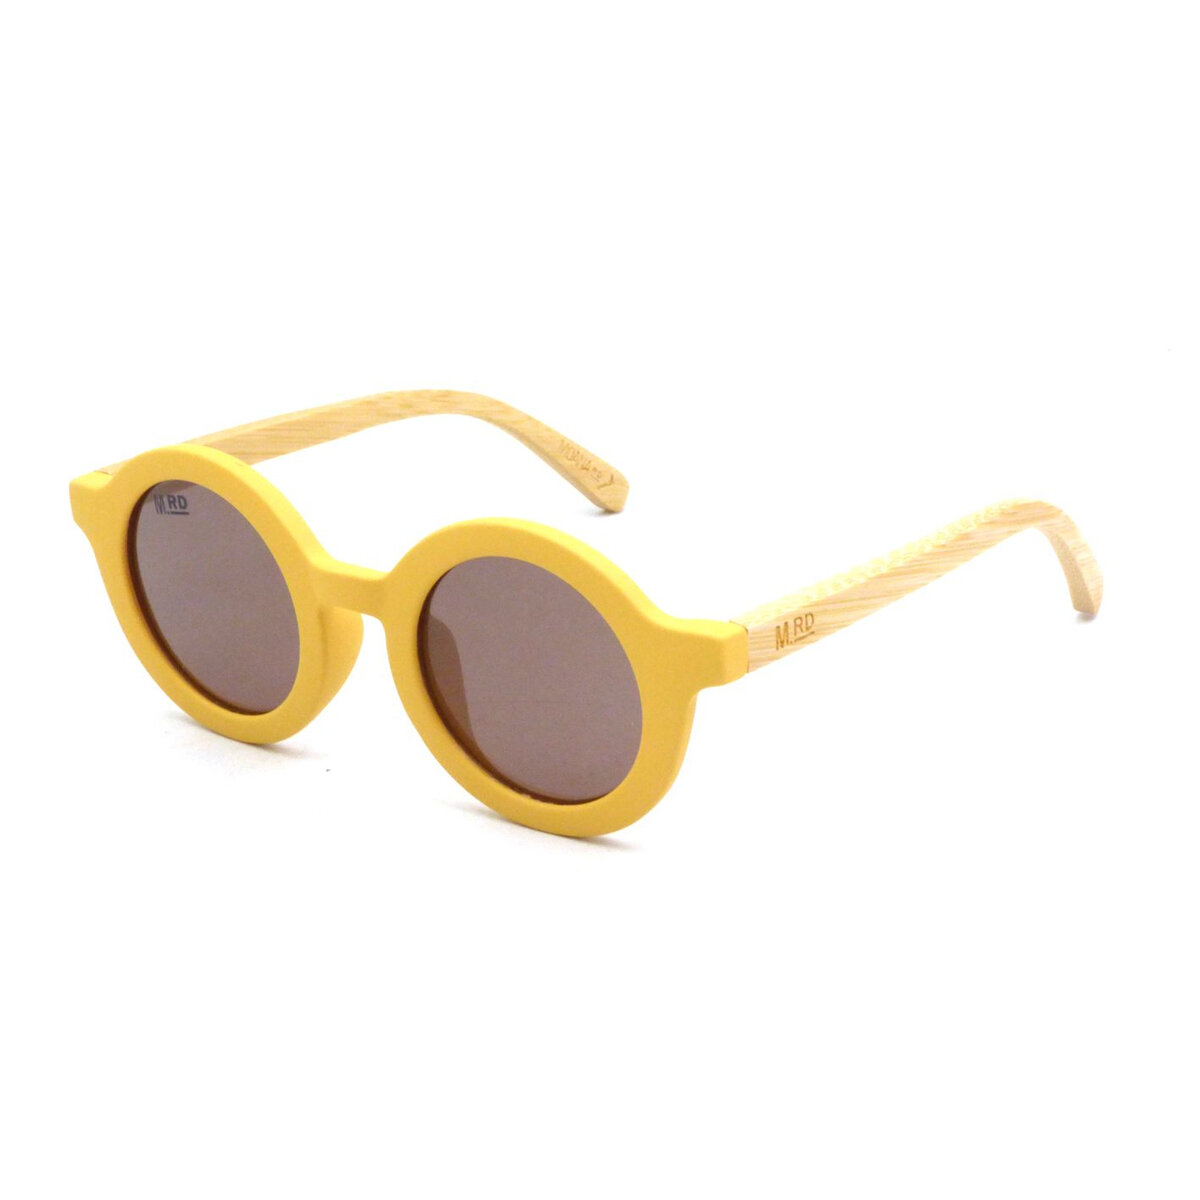 Moana Road Sunglasses + Free Case!, Kids Bambino Yellow Wood Arms 3361